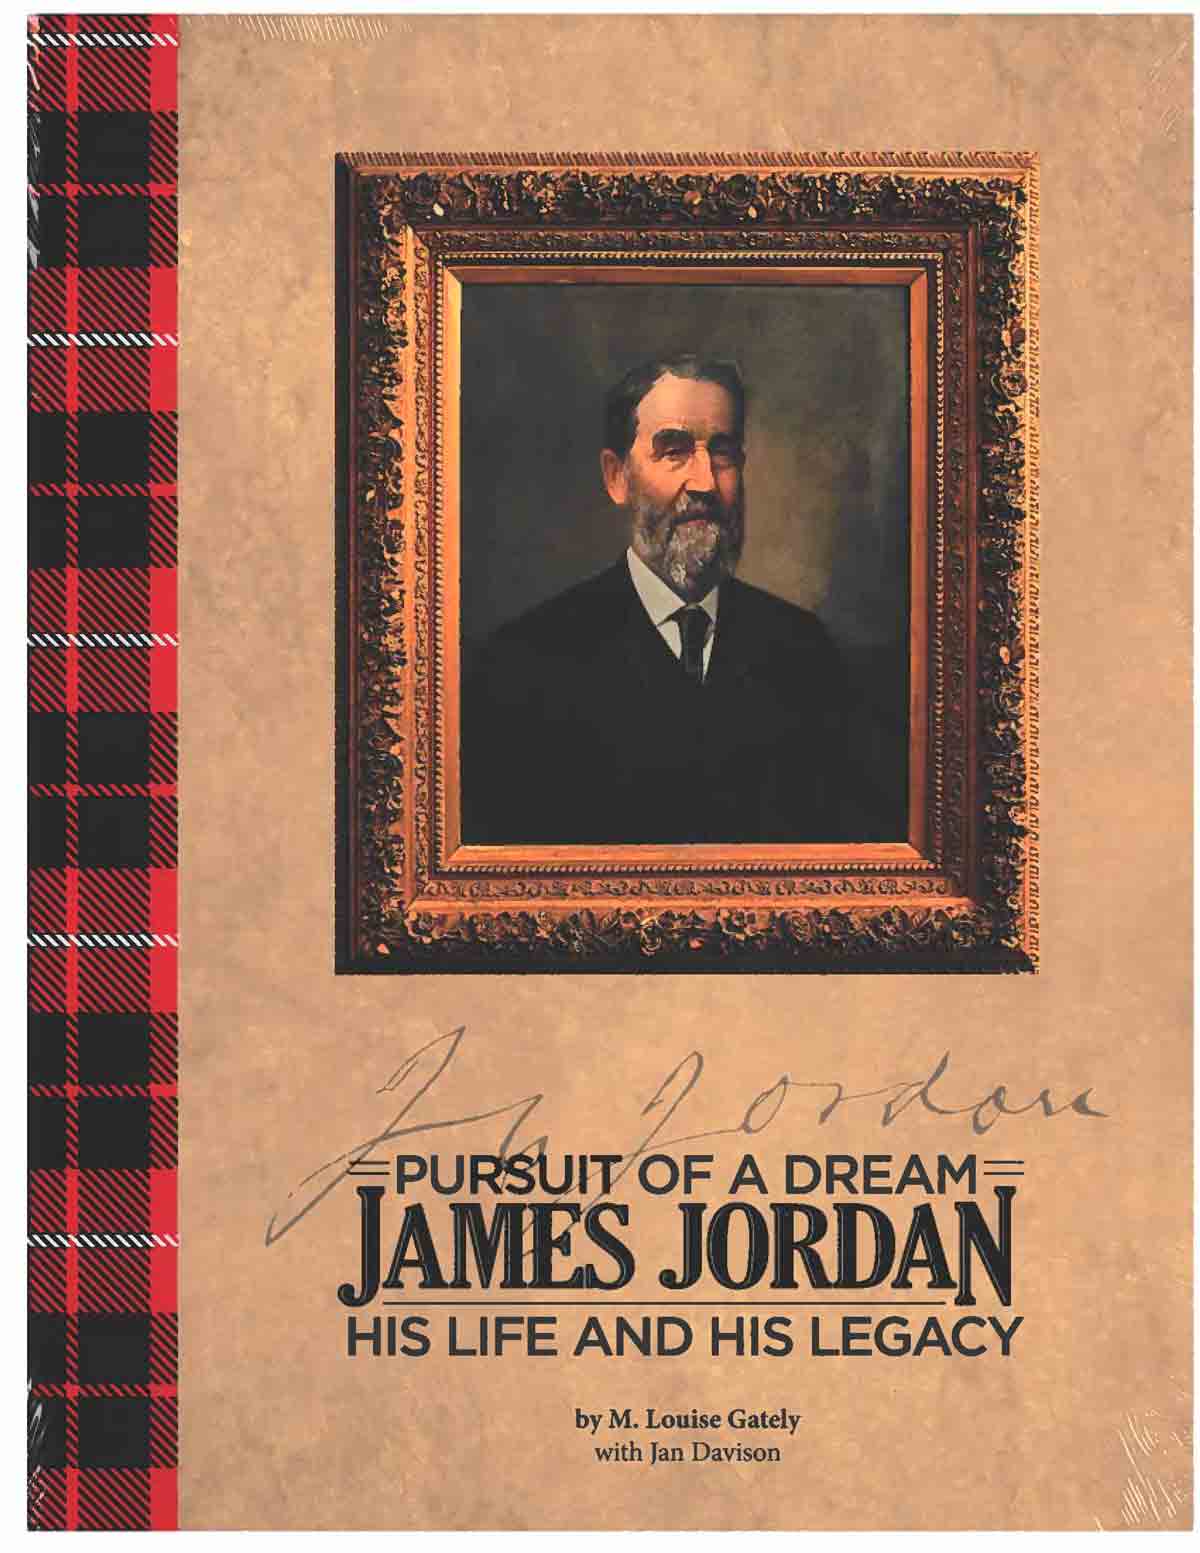 James Jordan Book Cover